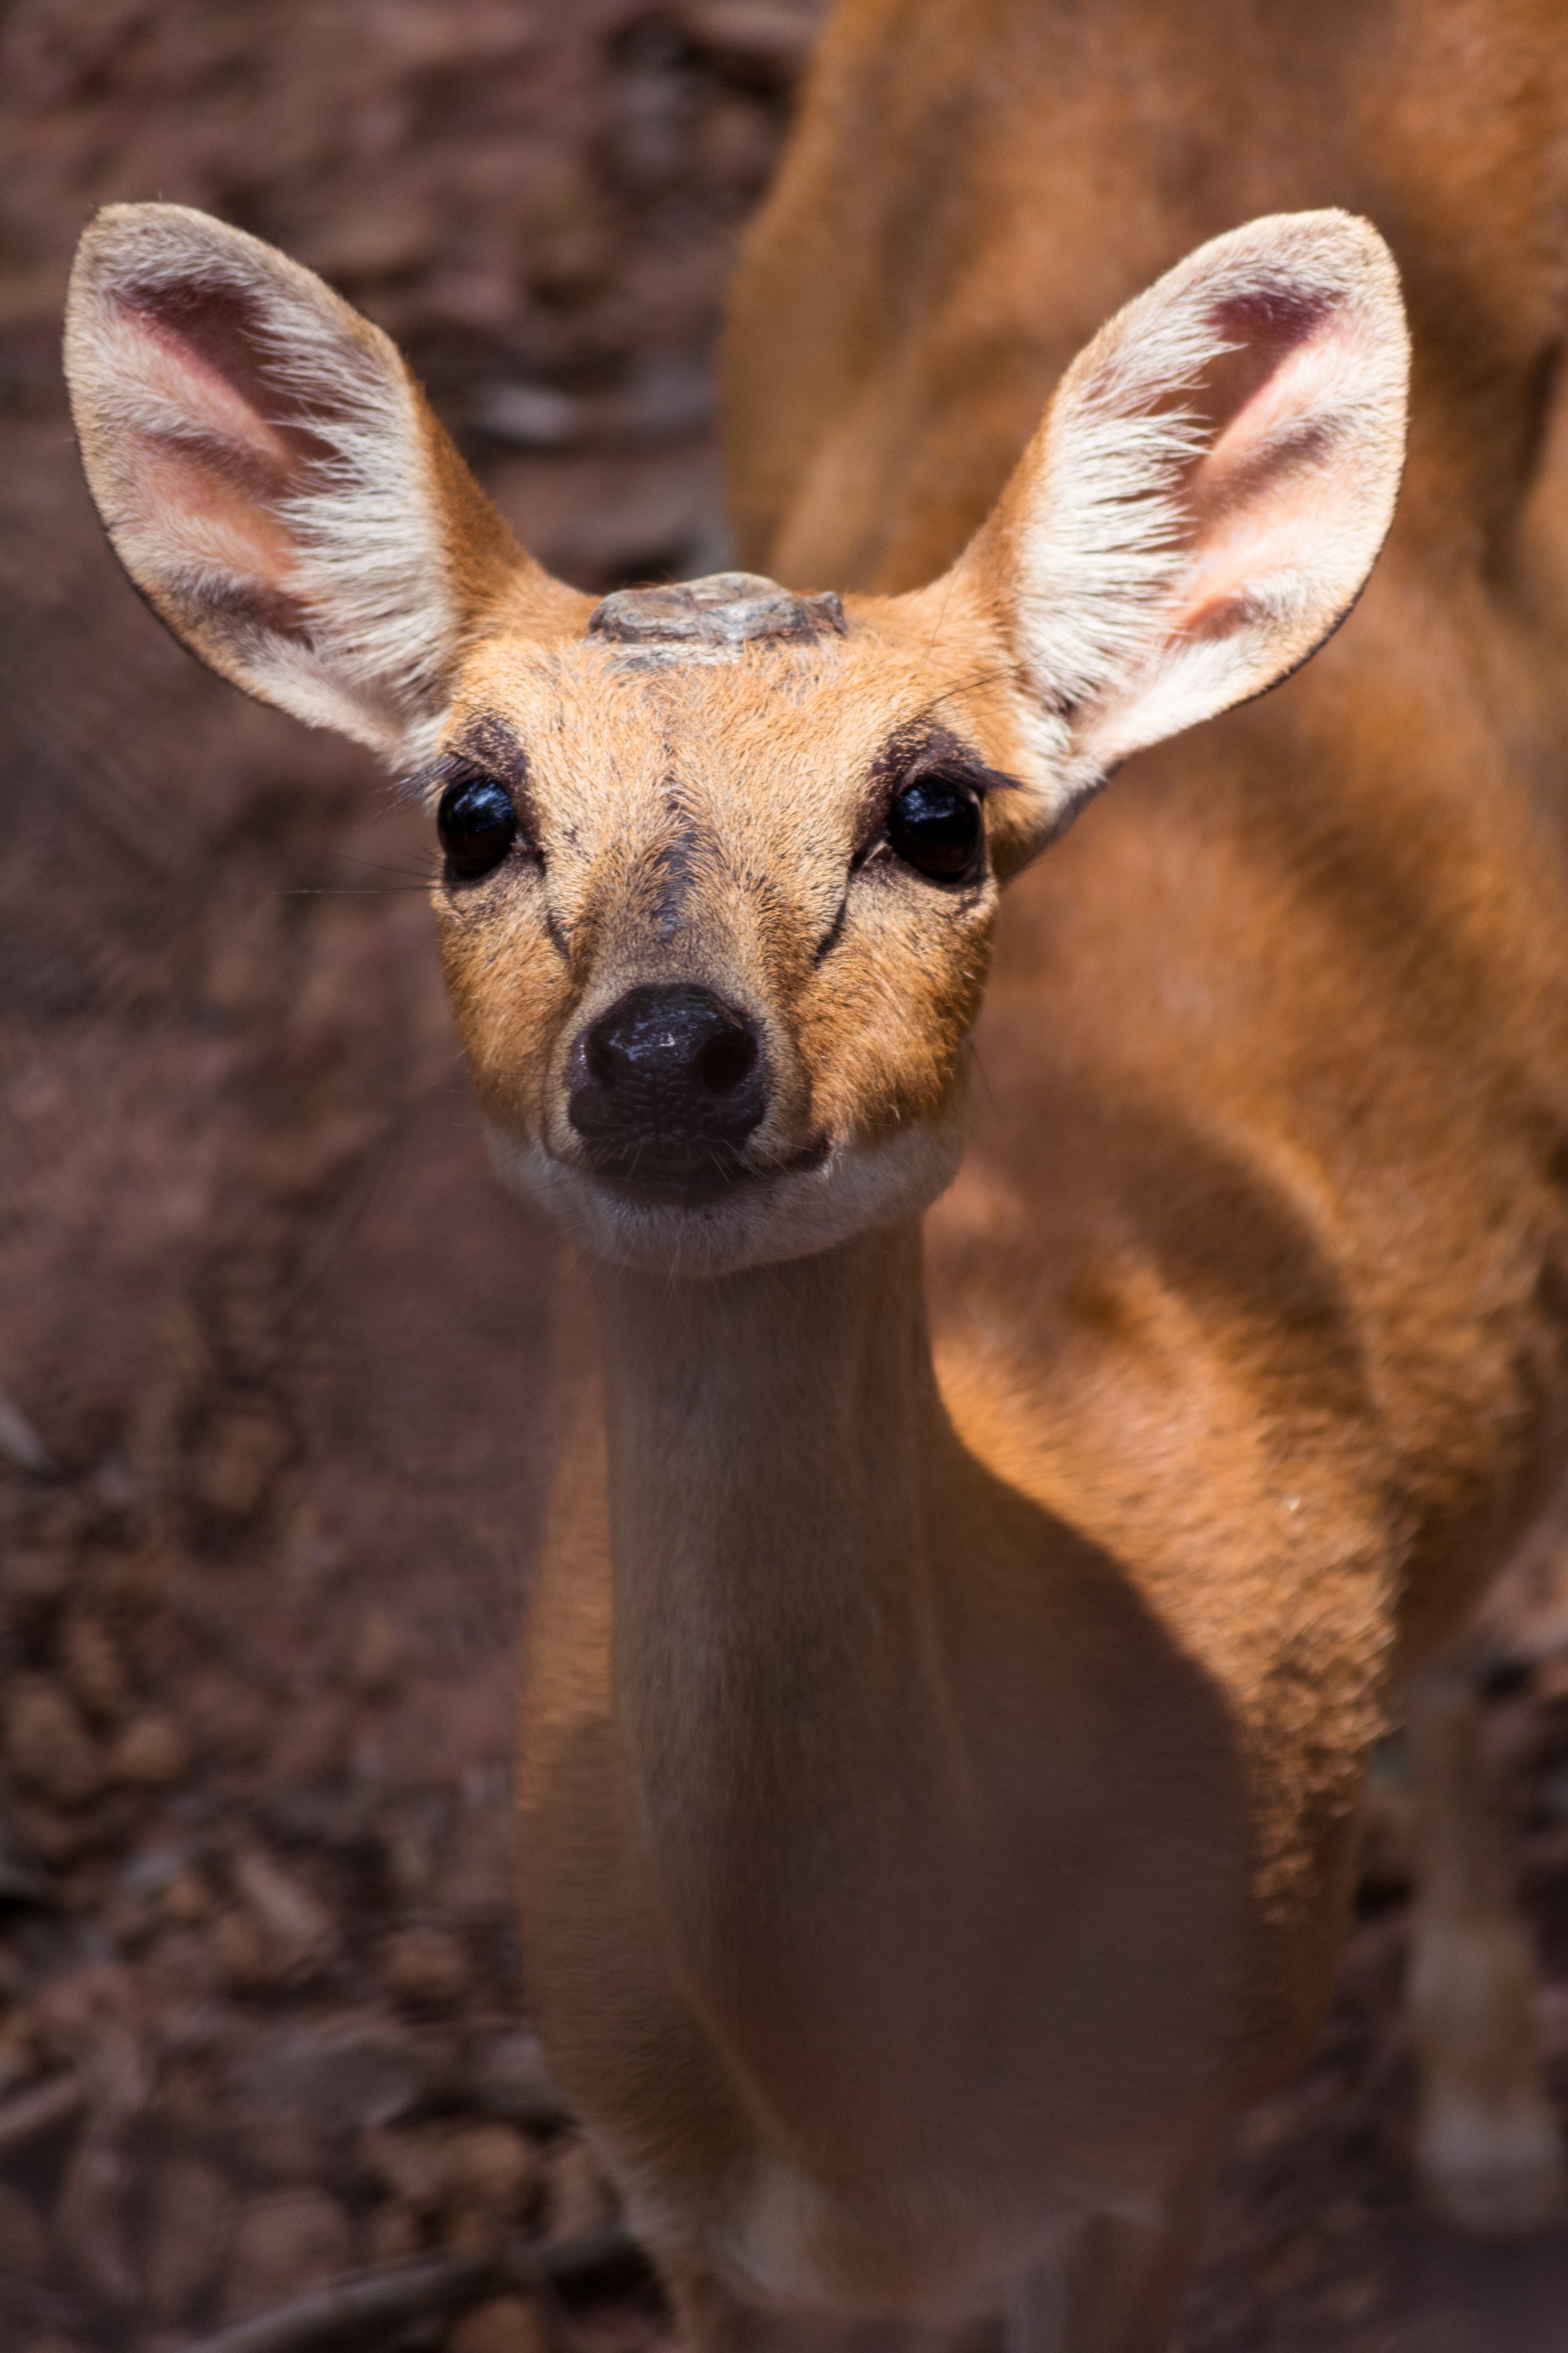 The Deer Eyes